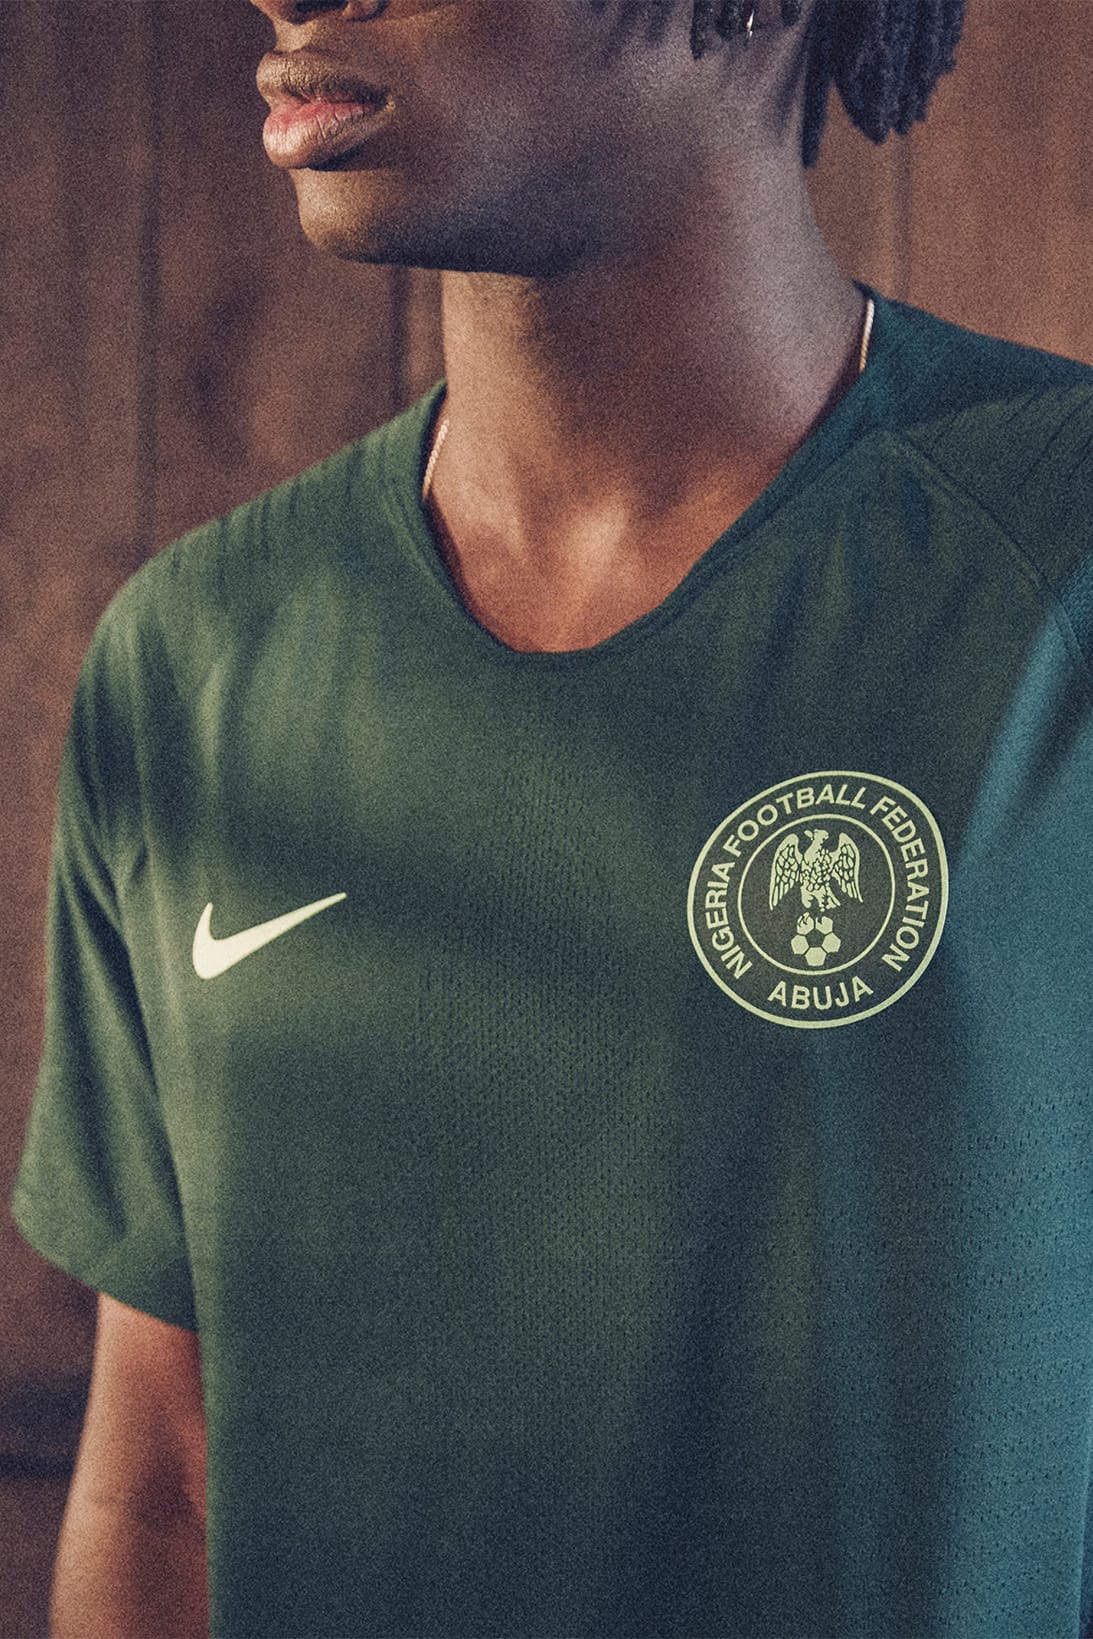 nigeria dark green jersey